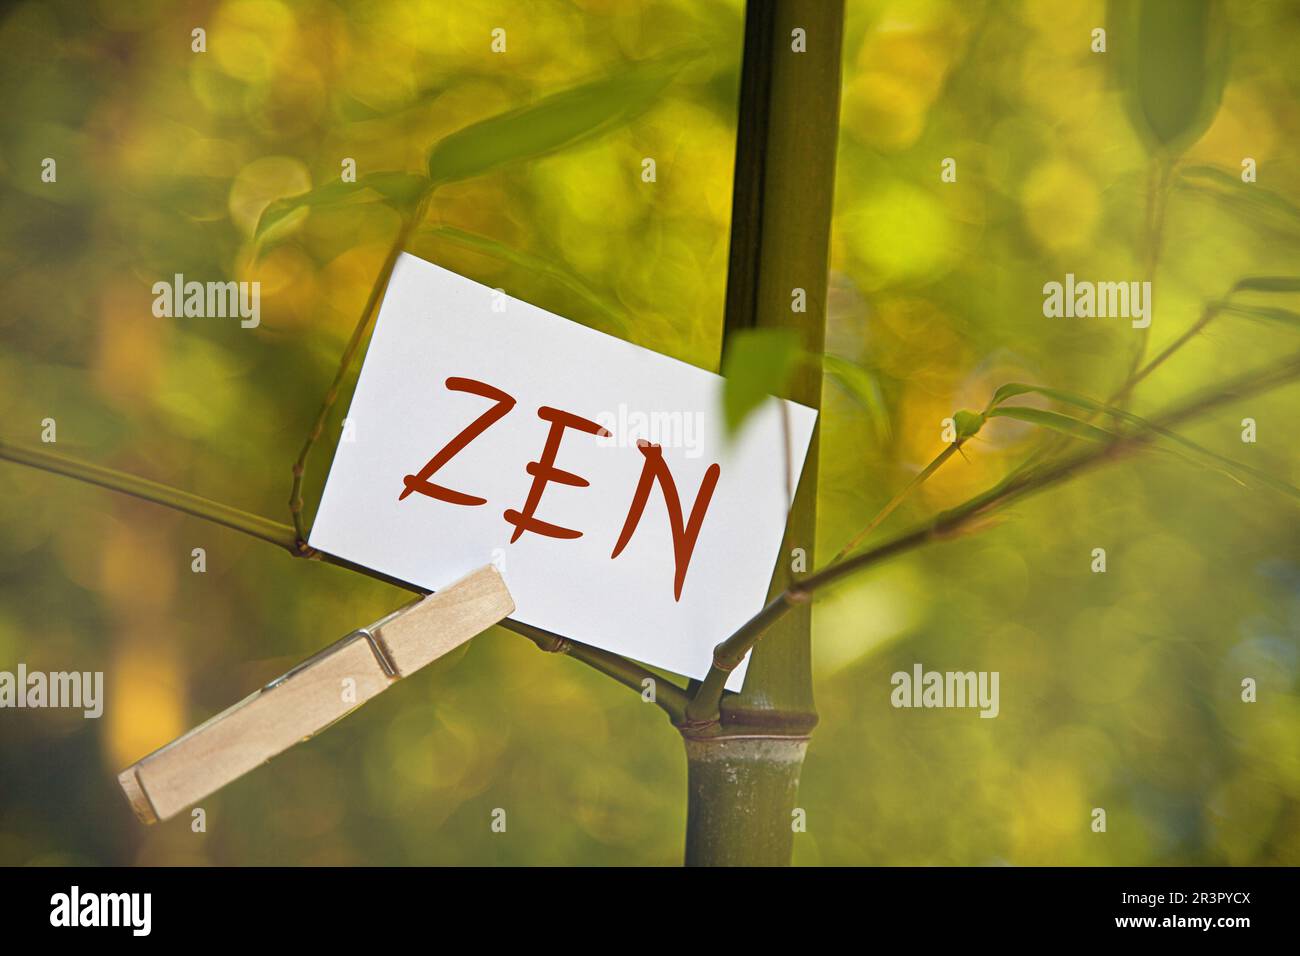 Memoblatt auf einem Bambus mit ZEN-Schriftzug Stockfoto